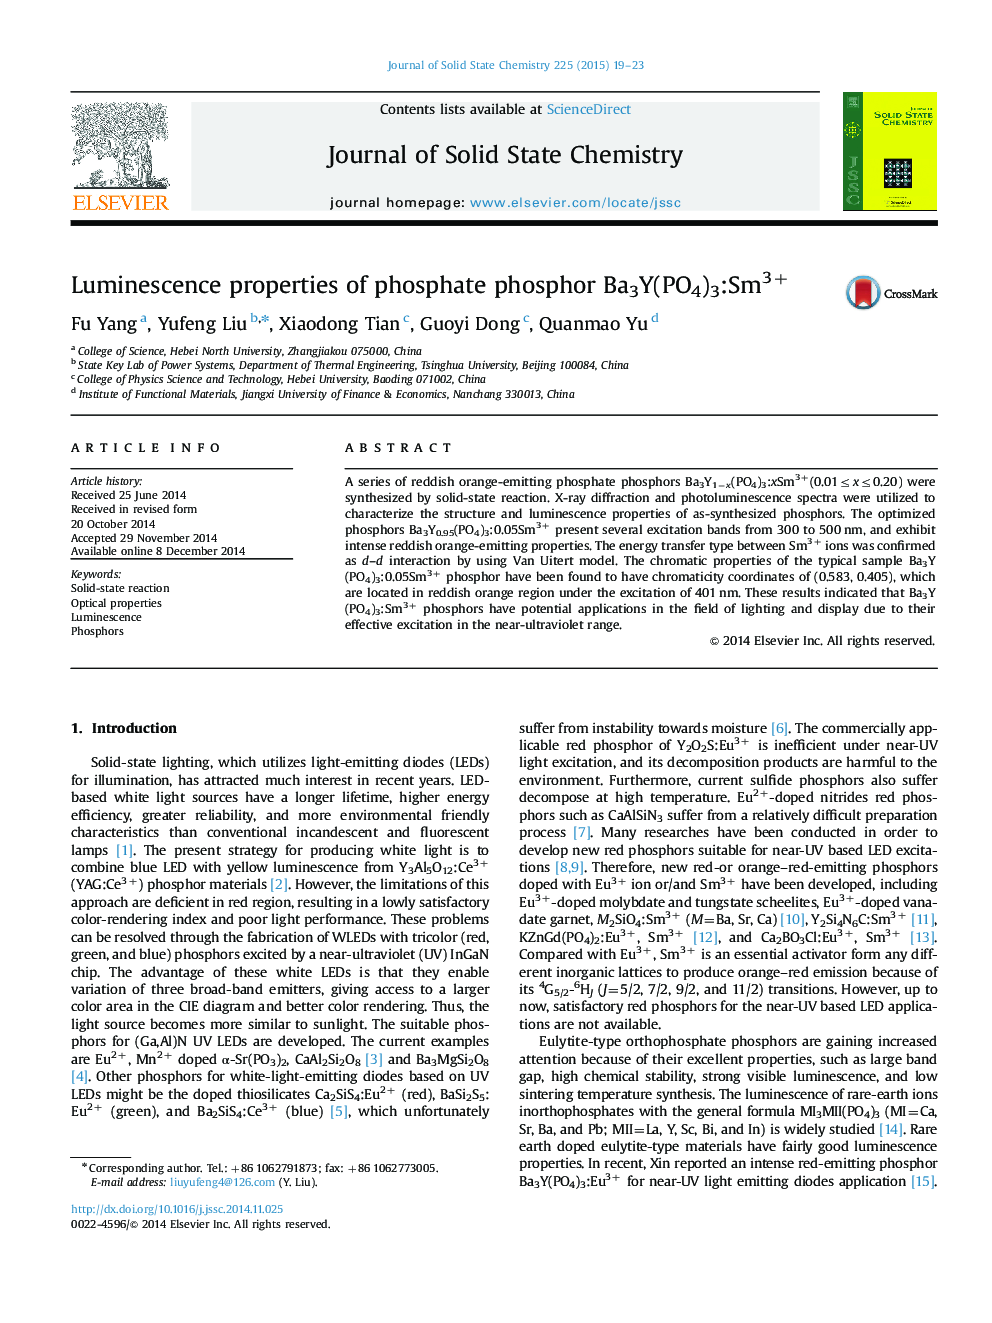 Luminescence properties of phosphate phosphor Ba3Y(PO4)3:Sm3+